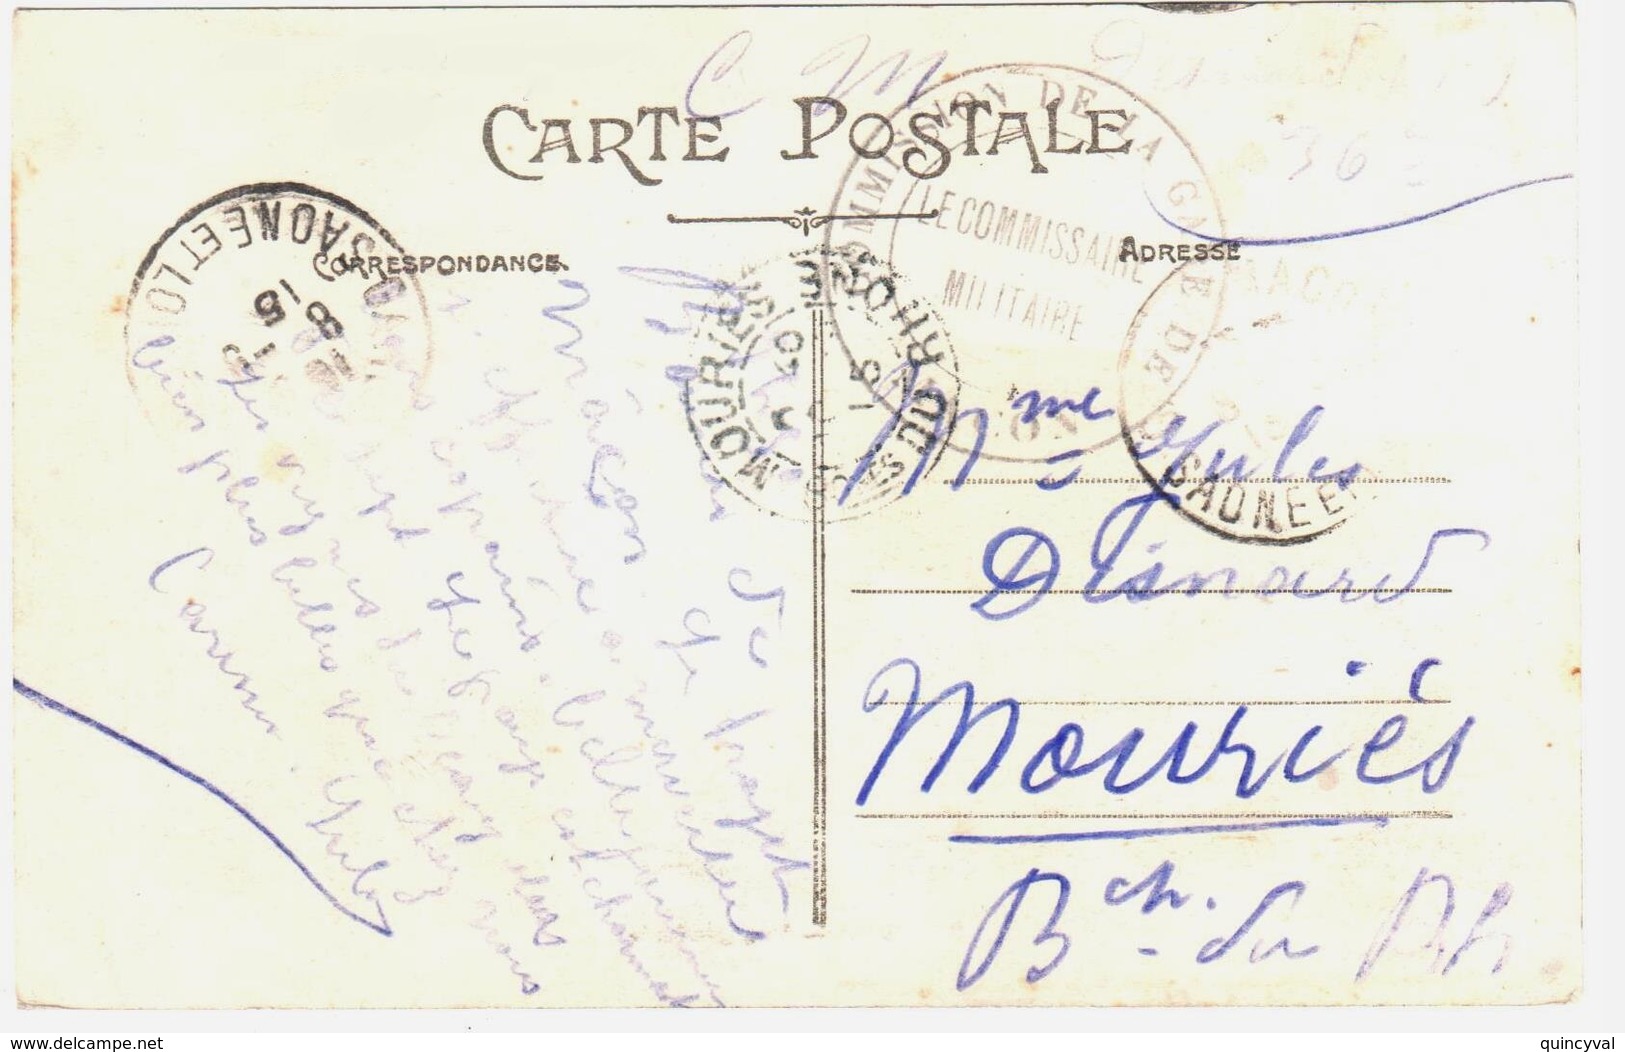 MACON Saône Et Loire Carte Postale En Franchise Militaire COMMISSION GARE DE MACON Dest Mouriés B D R Ob 8 9 1915 - Guerre De 1914-18